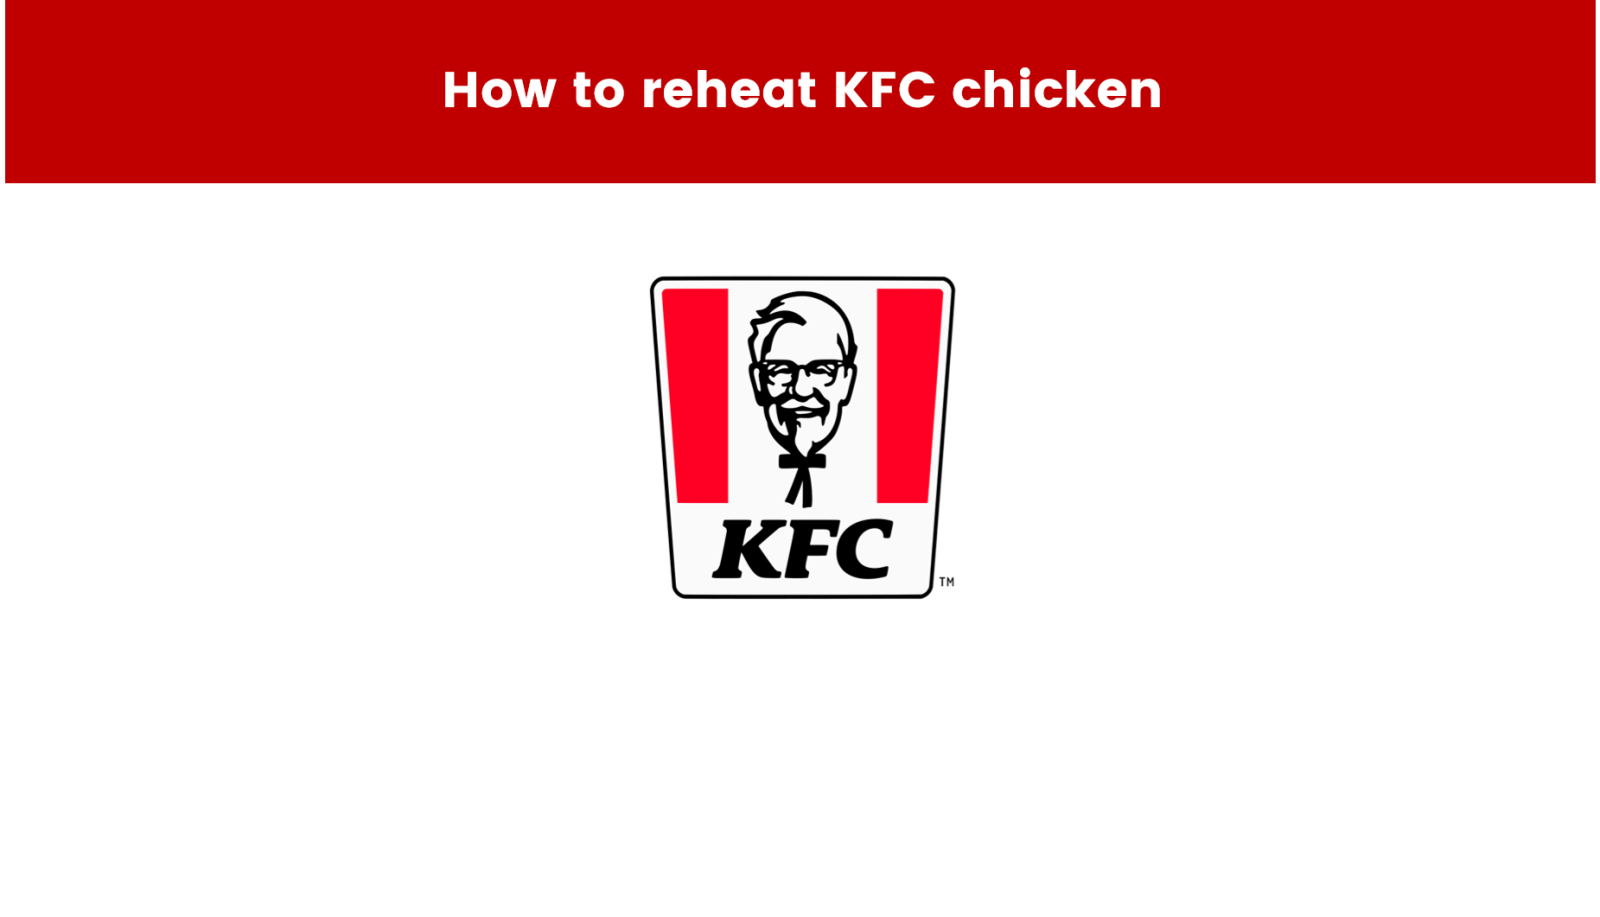 How to reheat KFC chicken